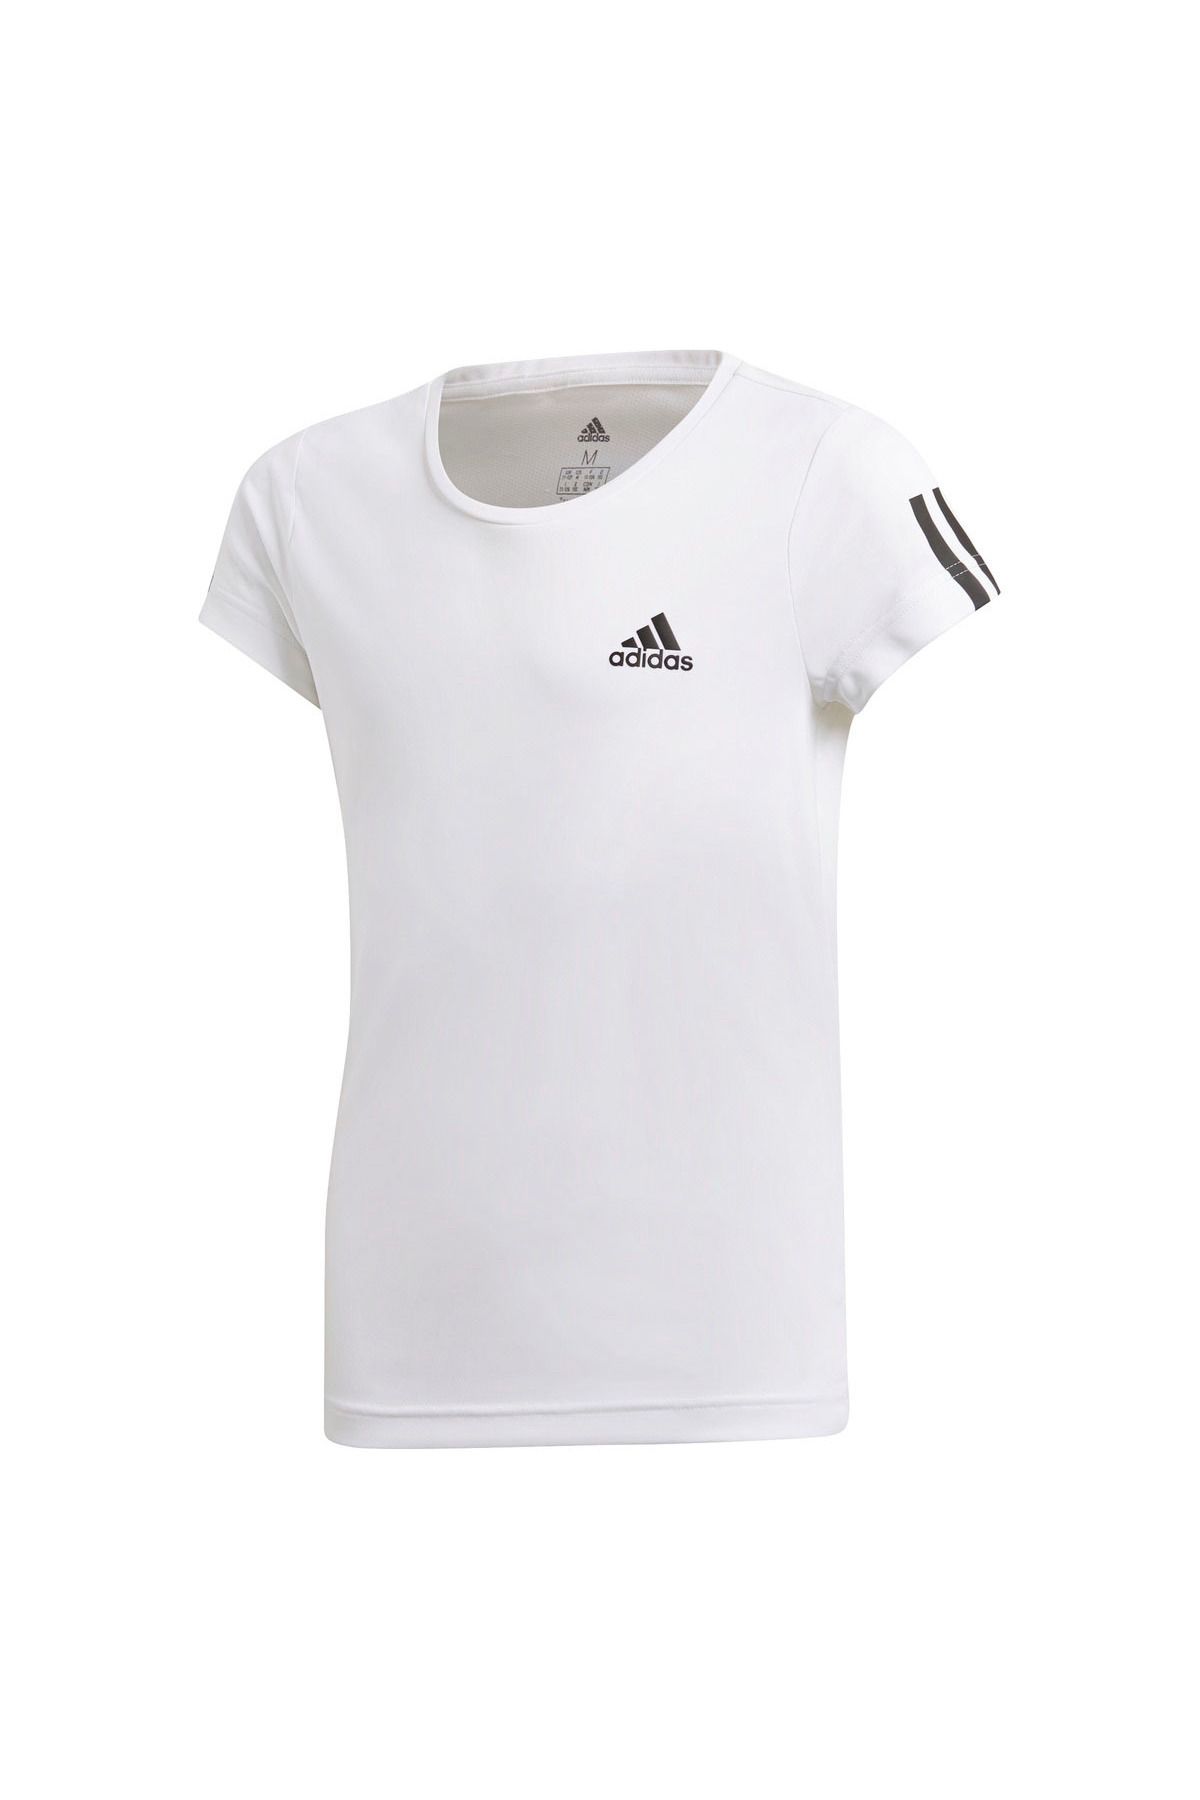 adidas Yg Tr Eq Tee Kadın Beyaz Antrenman Tişört Dv2758